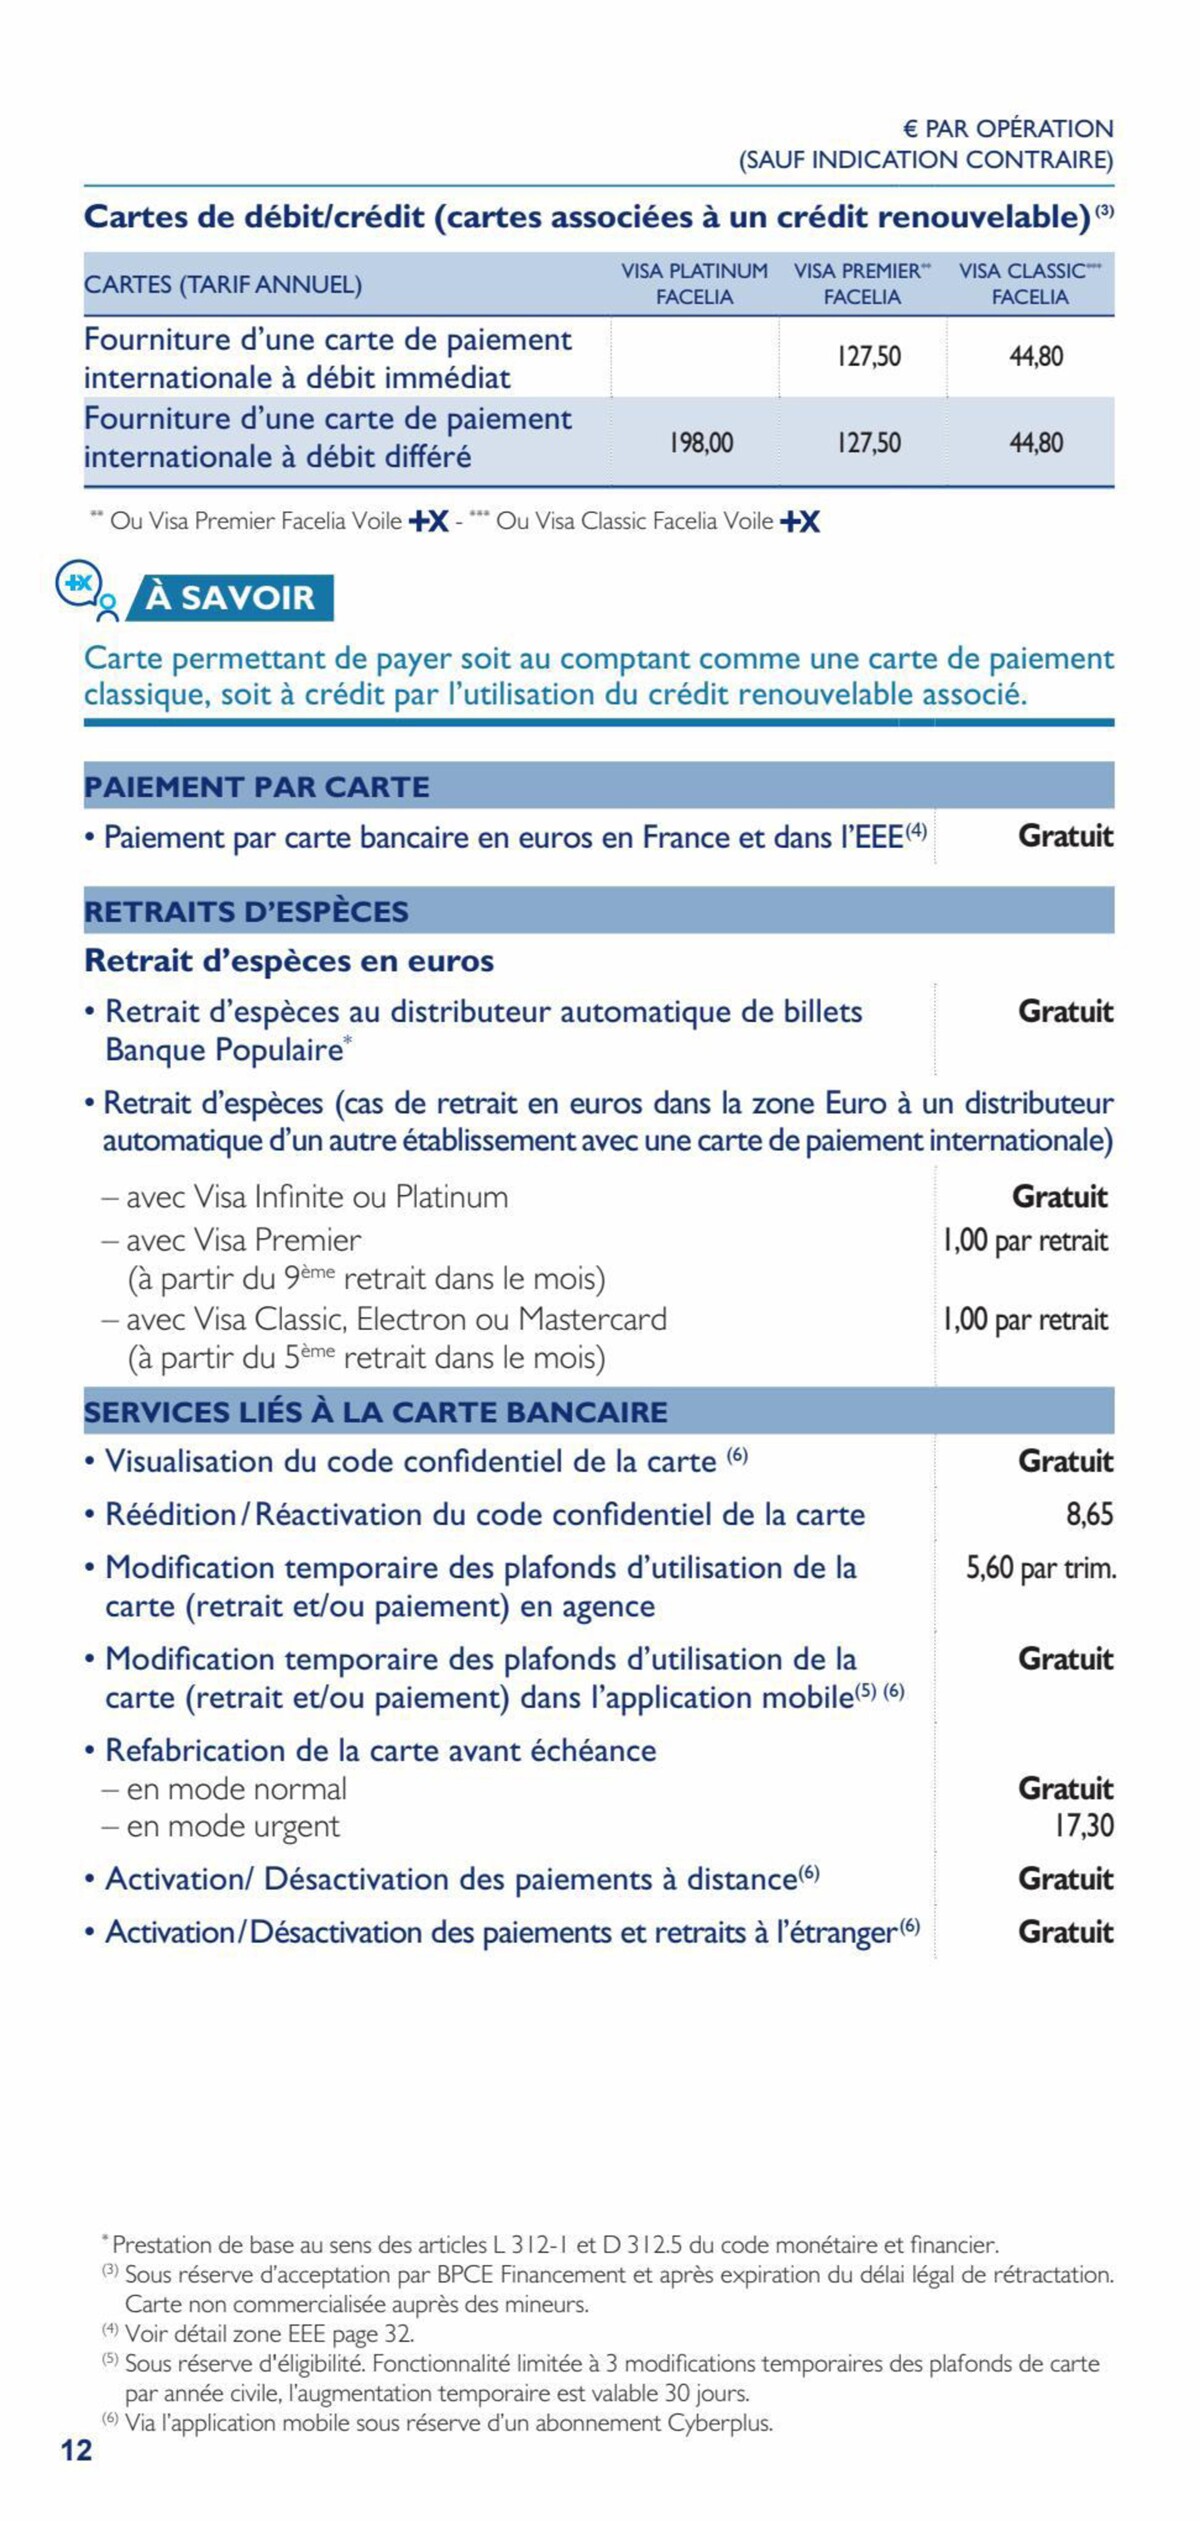 Catalogue Bpgo tarifs part 2023 avenant, page 00012